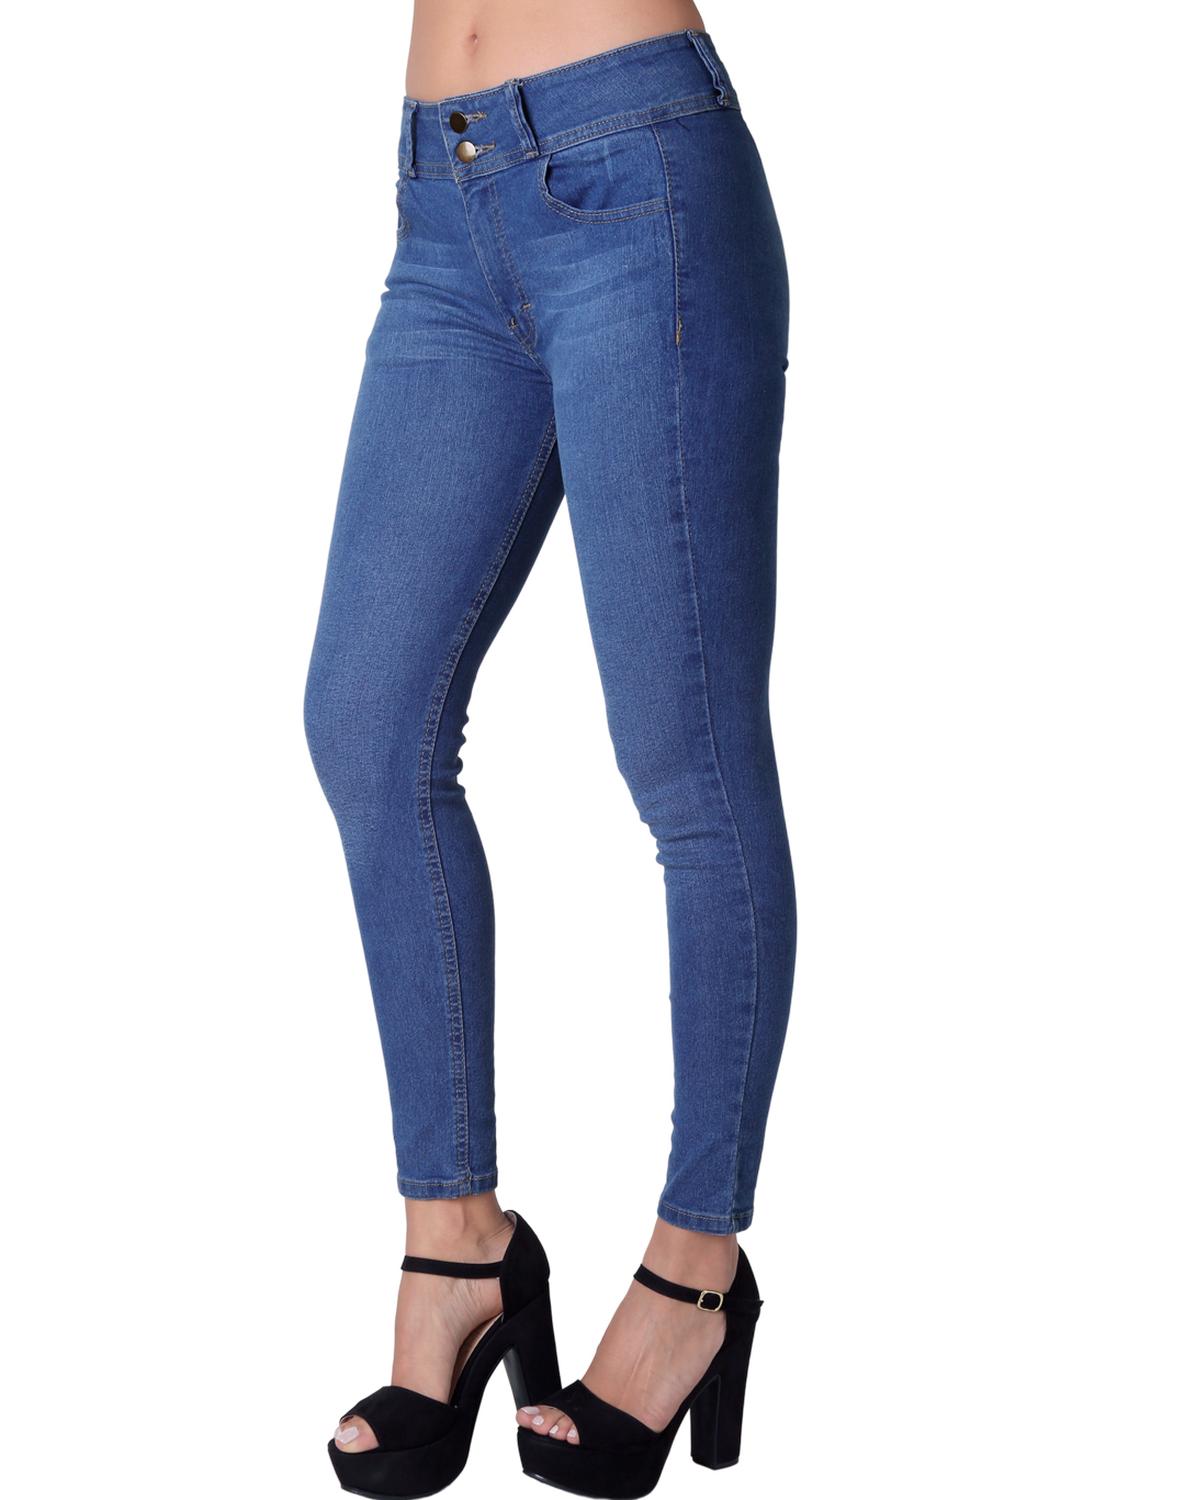 Jeans Moda Skinny Mujer Azul Stfashion 63104611